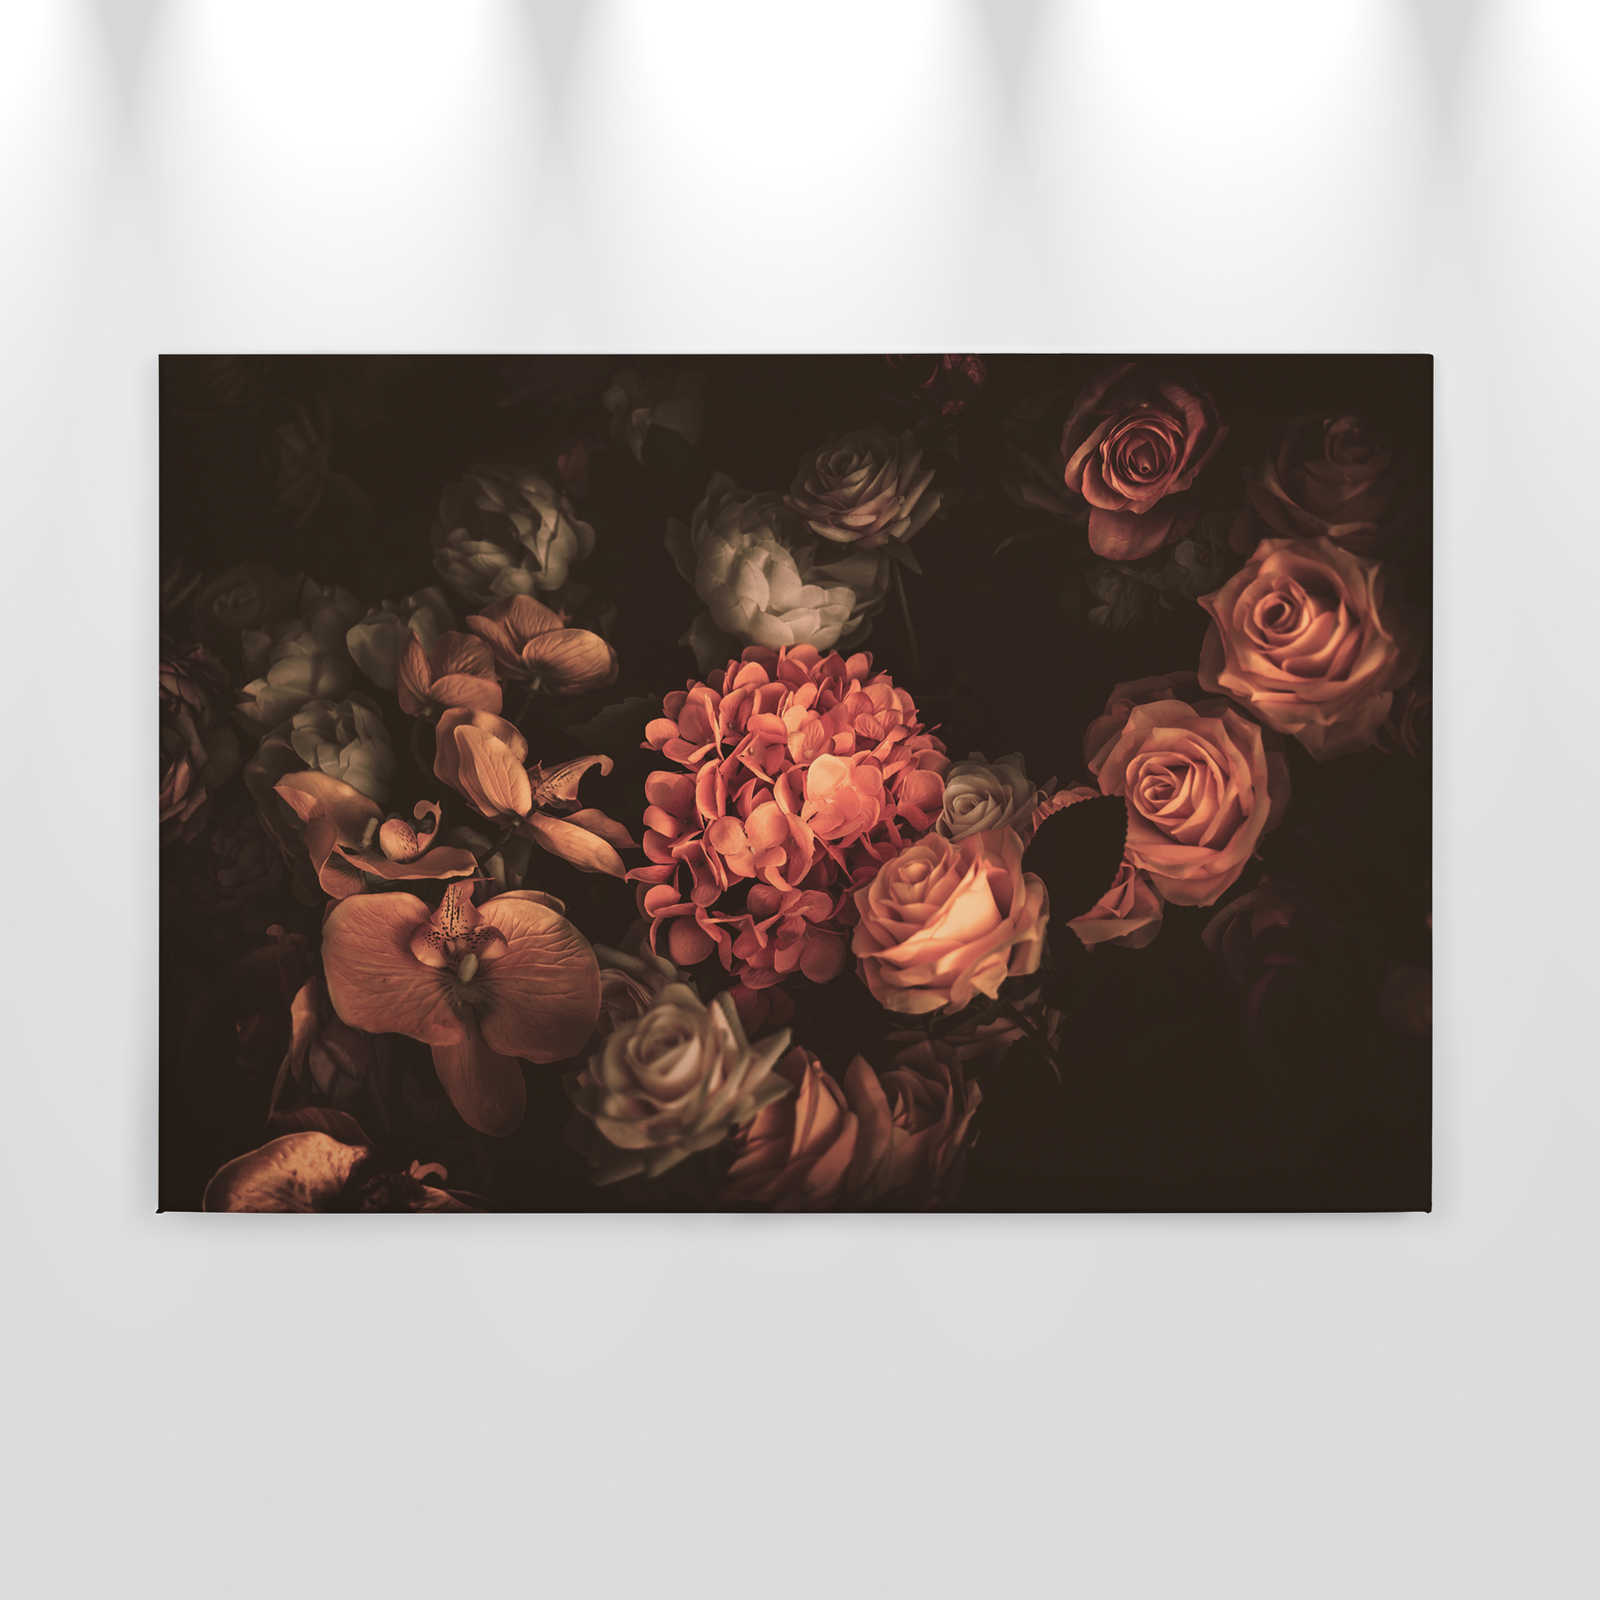             Toile romantique avec bouquet de fleurs - 0,90 m x 0,60 m
        